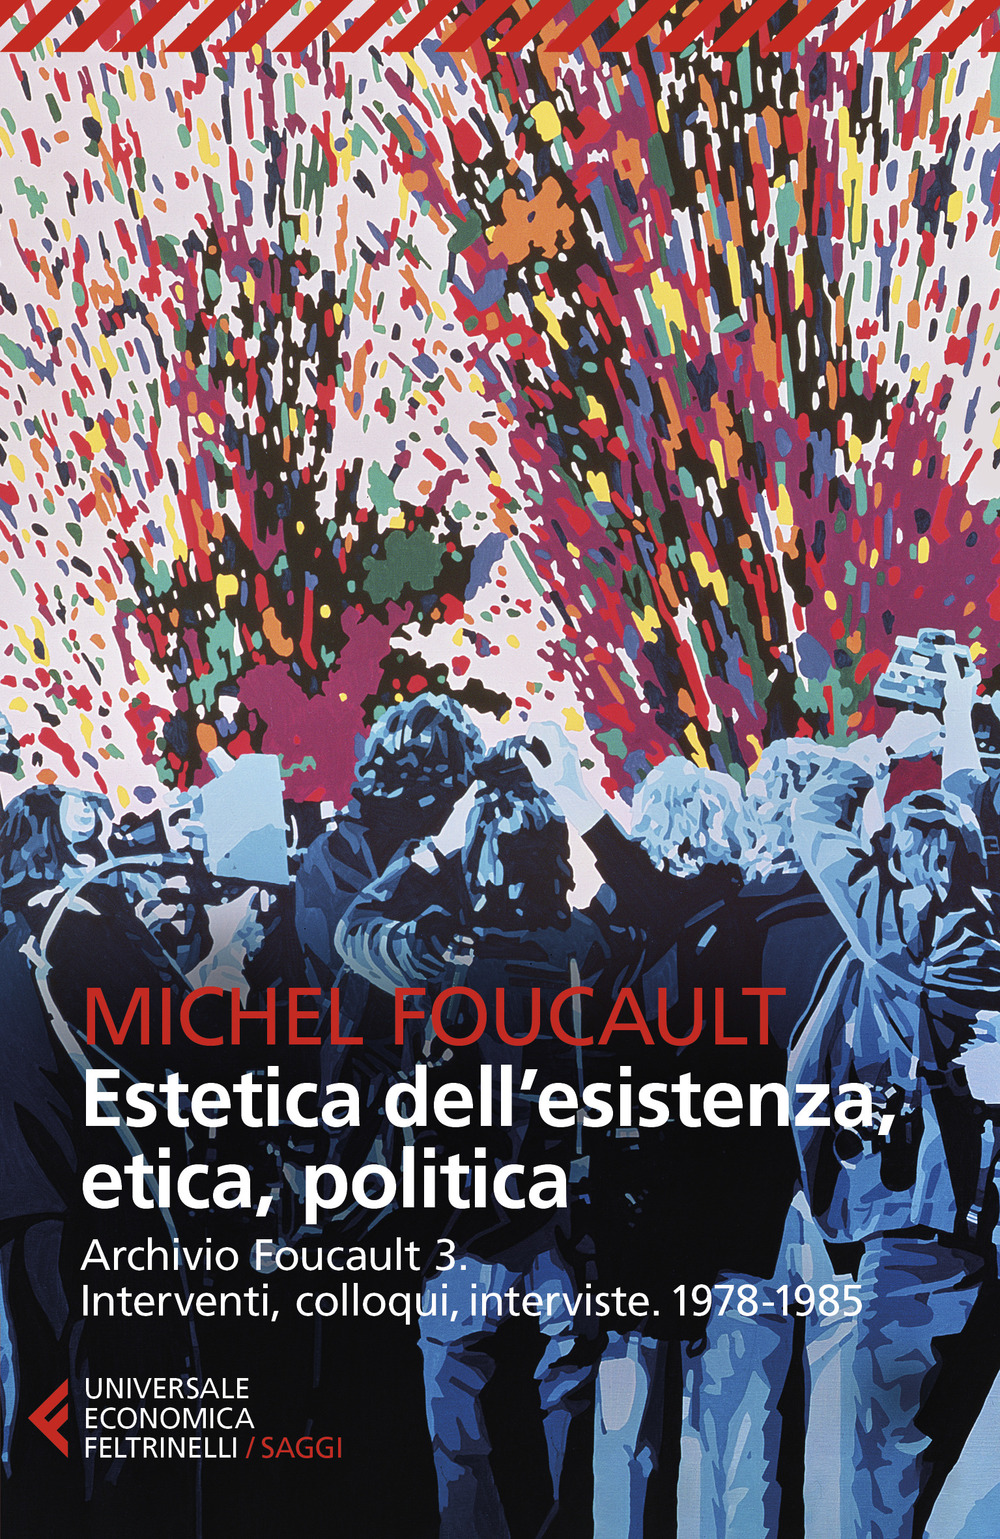 Archivio Foucault. Interventi, colloqui, interviste. Vol. 3: 1978-1985. Estetica dell'esistenza, etica, politica